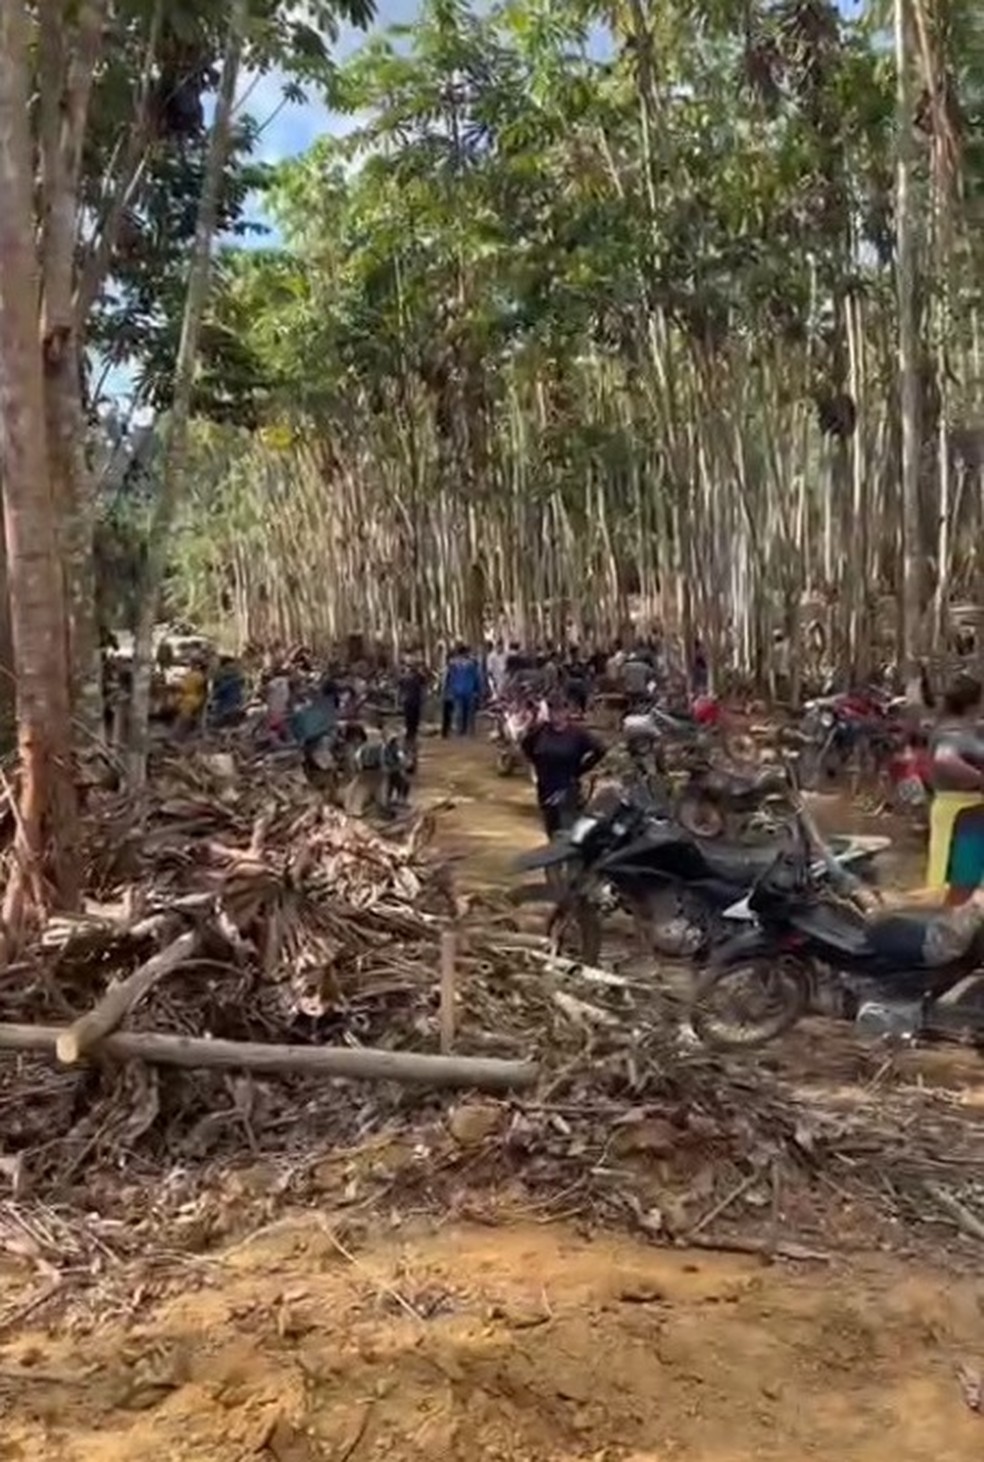 Candidato grava vídeo em área proibida de terra indígena no Pará. — Foto: Reprodução / Arquivo pessoal